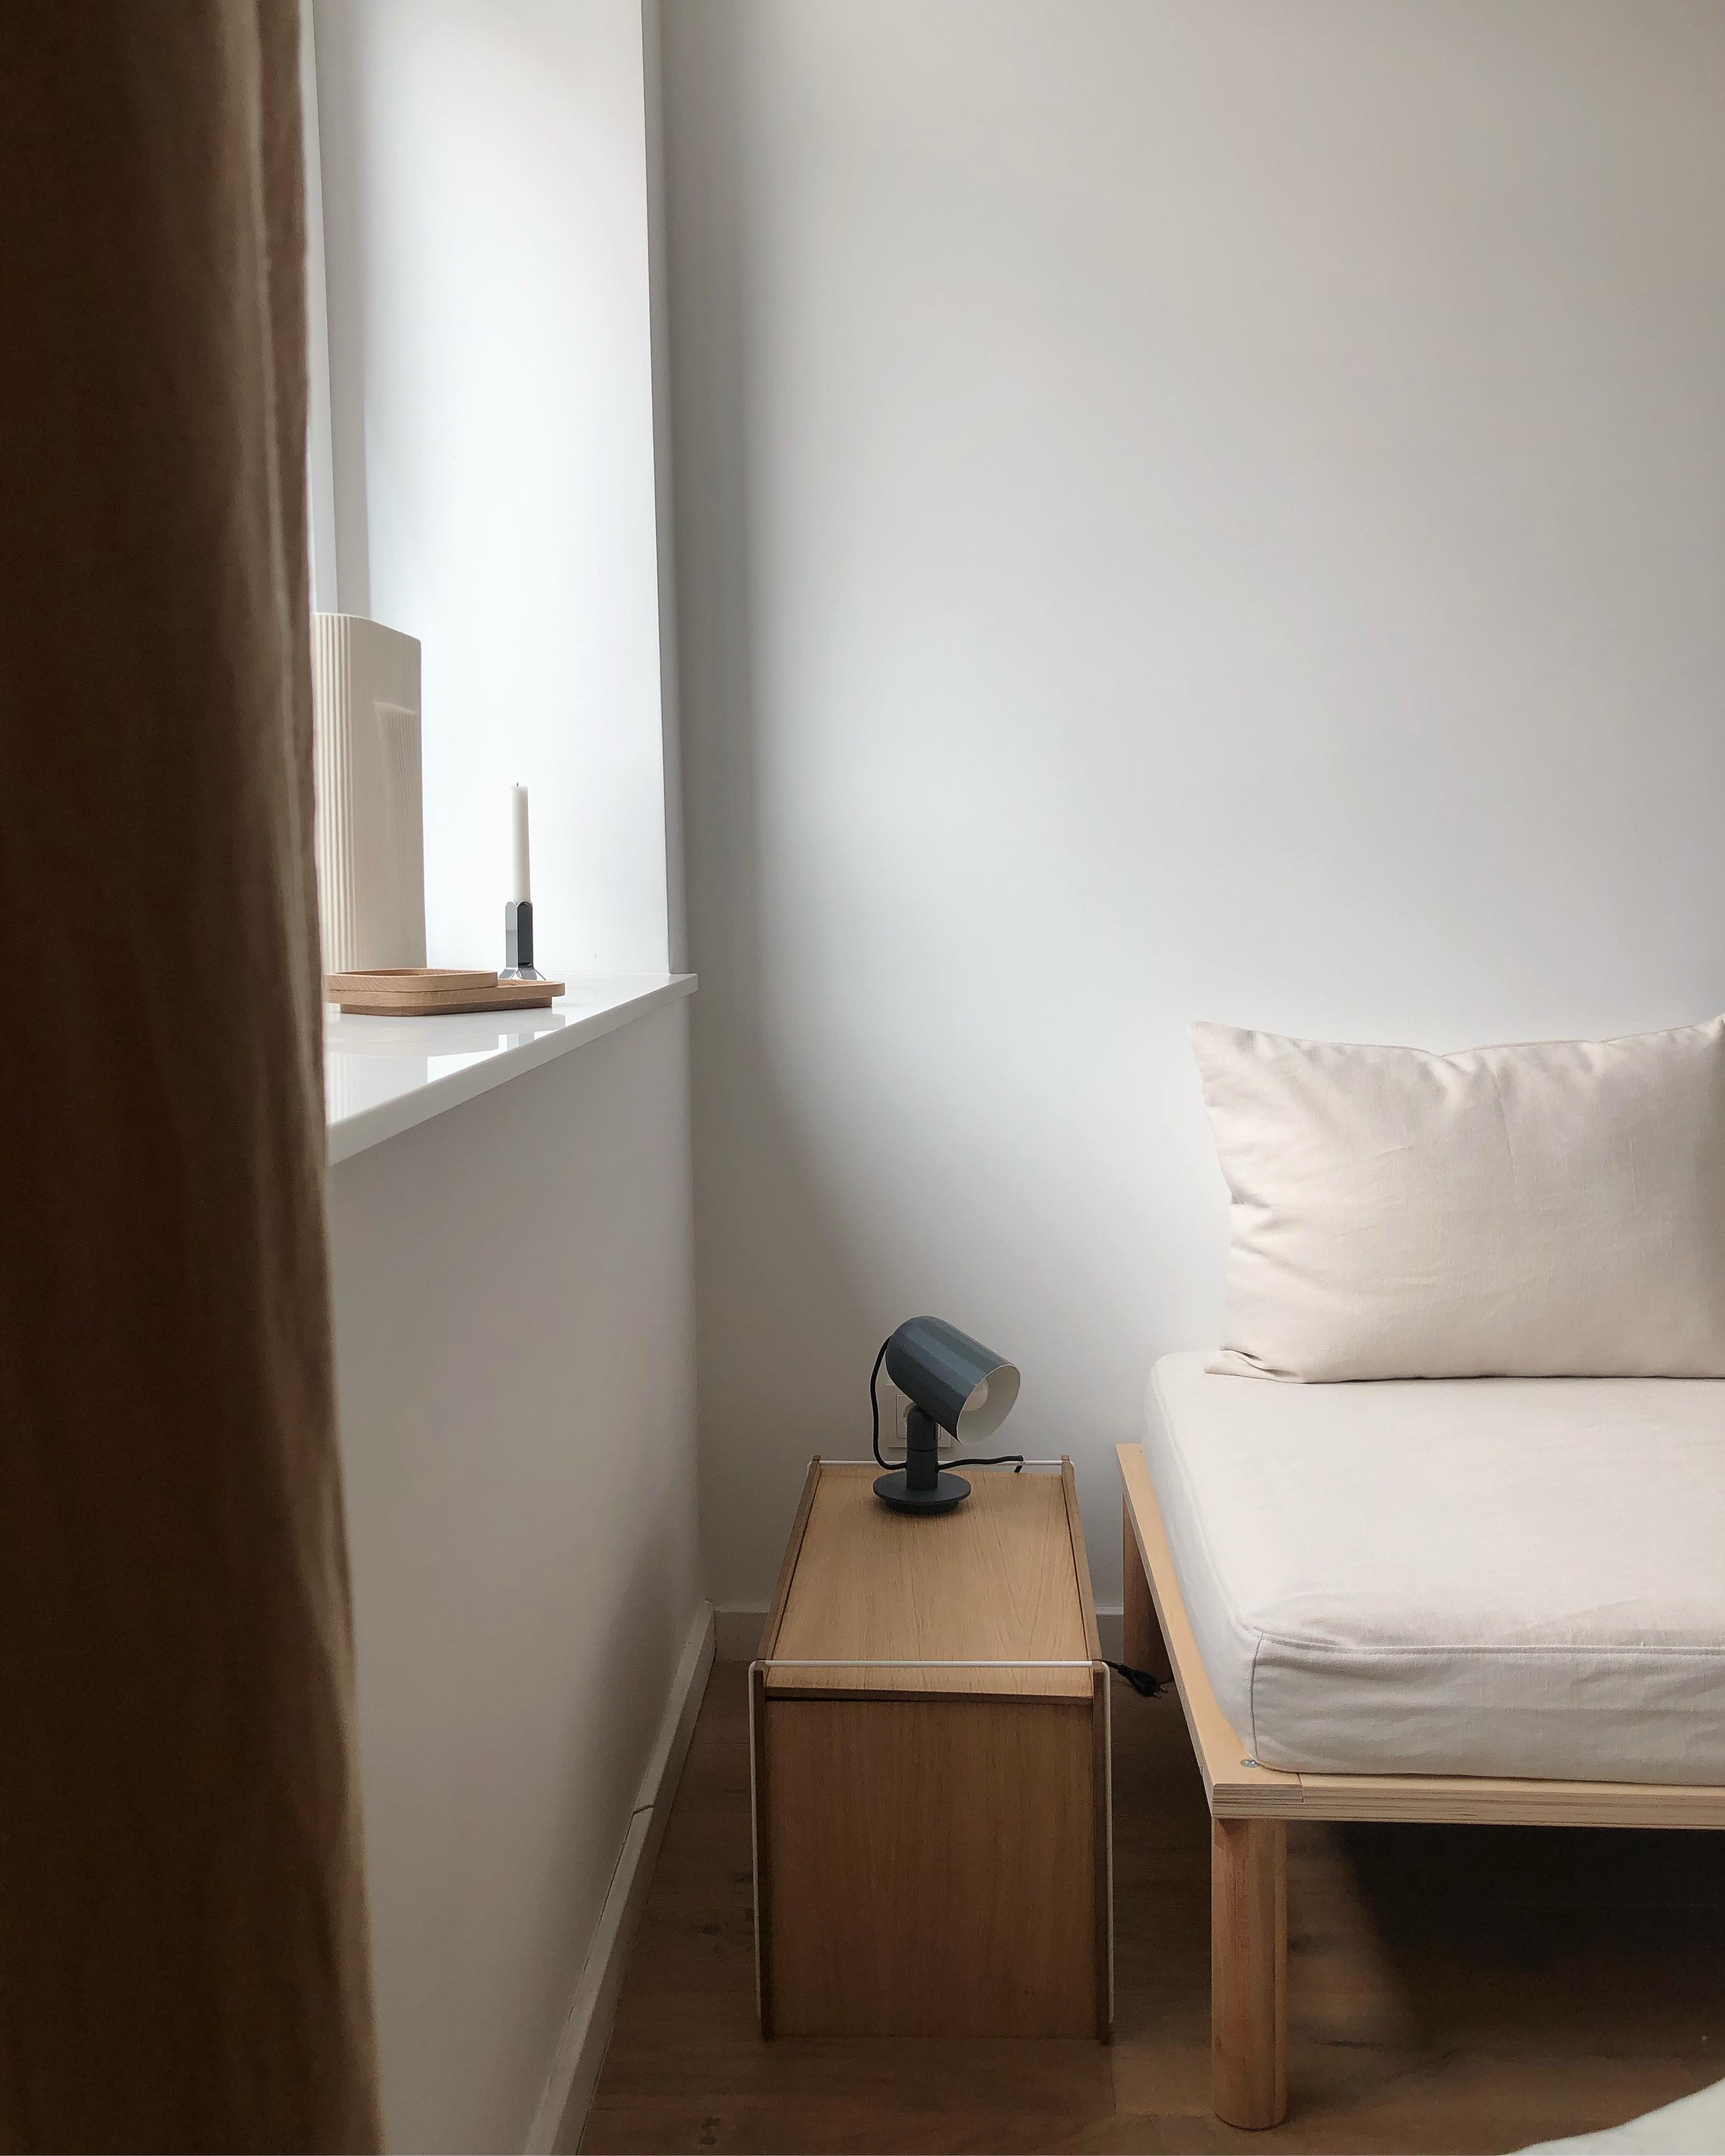 #gästezimmer #guestroom #daybed #tagesbett #couch #japandi #skandinavisch #scandi #couchstyle #minimalism #interior